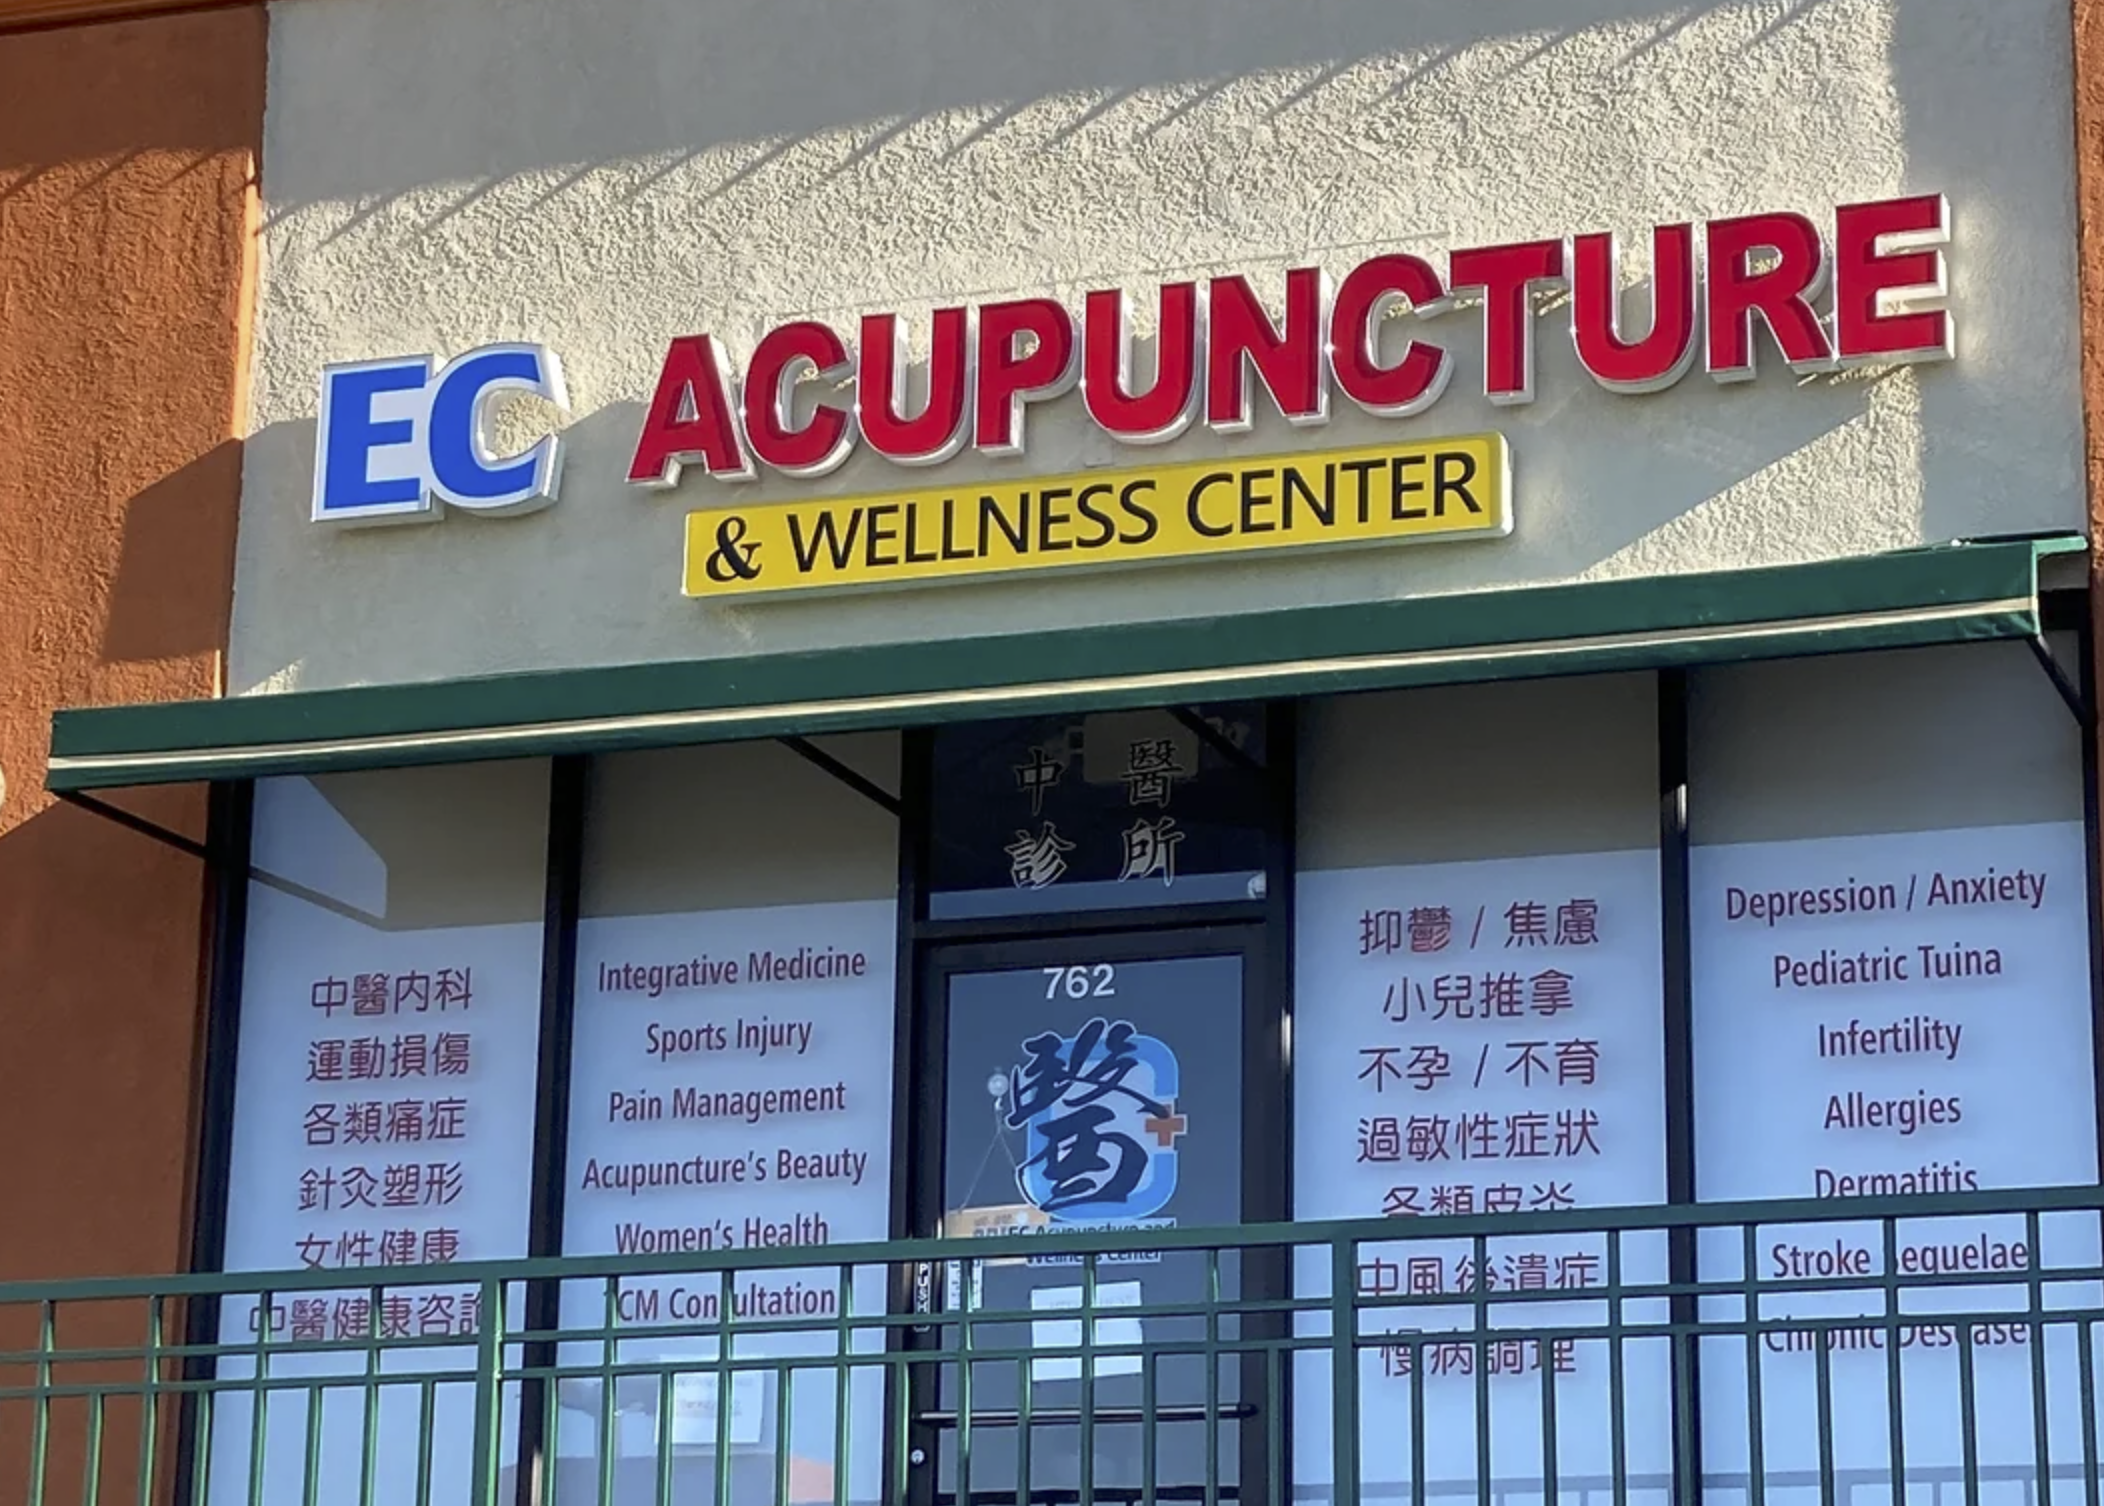 ecAcupunctureWellnessCenter.png